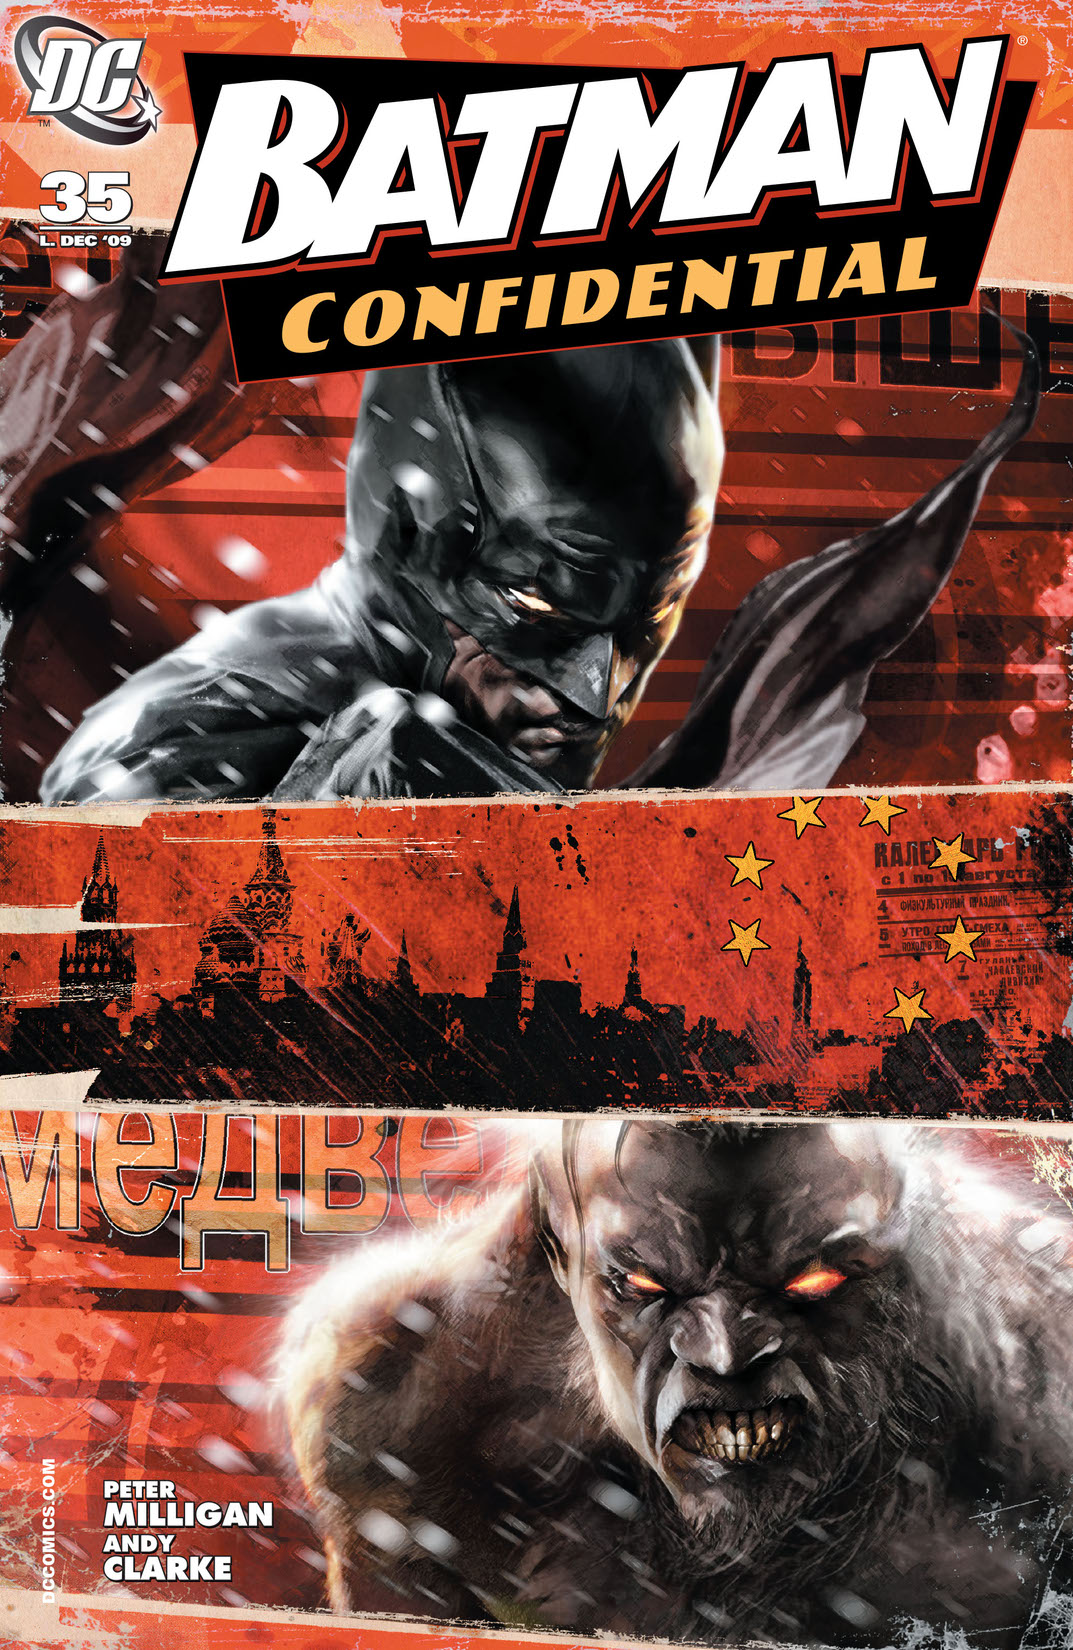 Batman Confidential #35 preview images